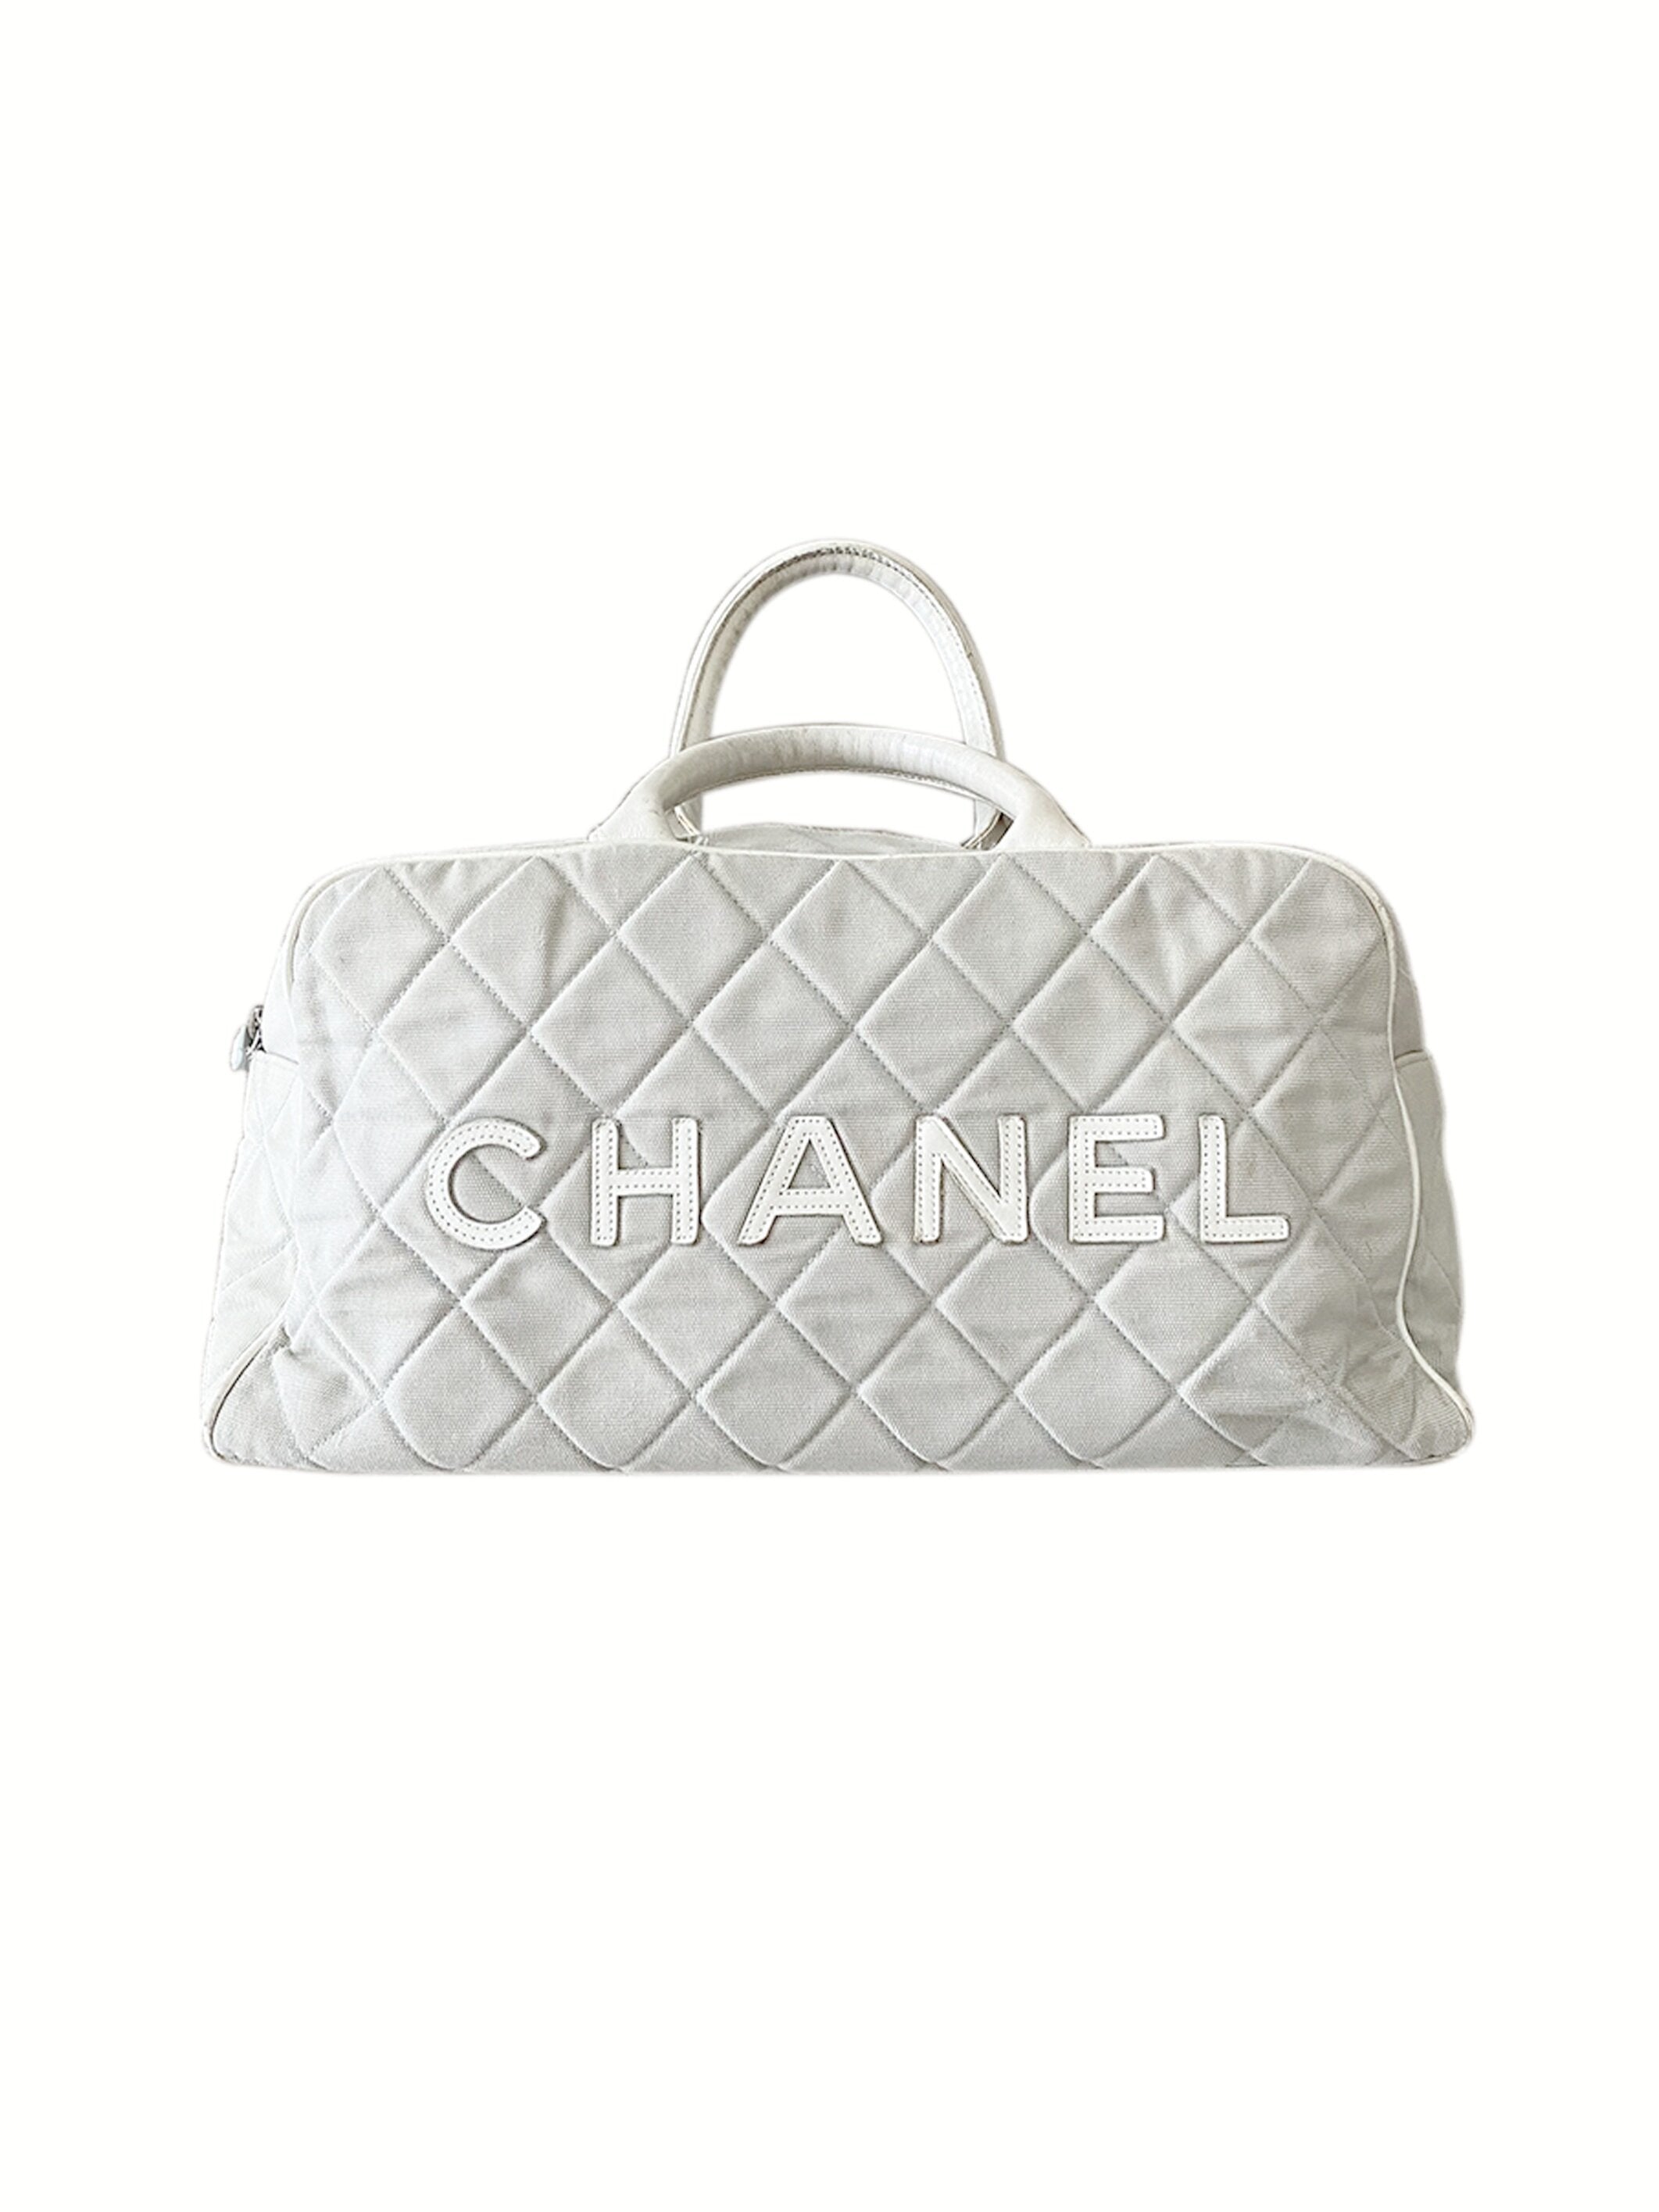 CHANEL, Bags, Chanel Gym Bag